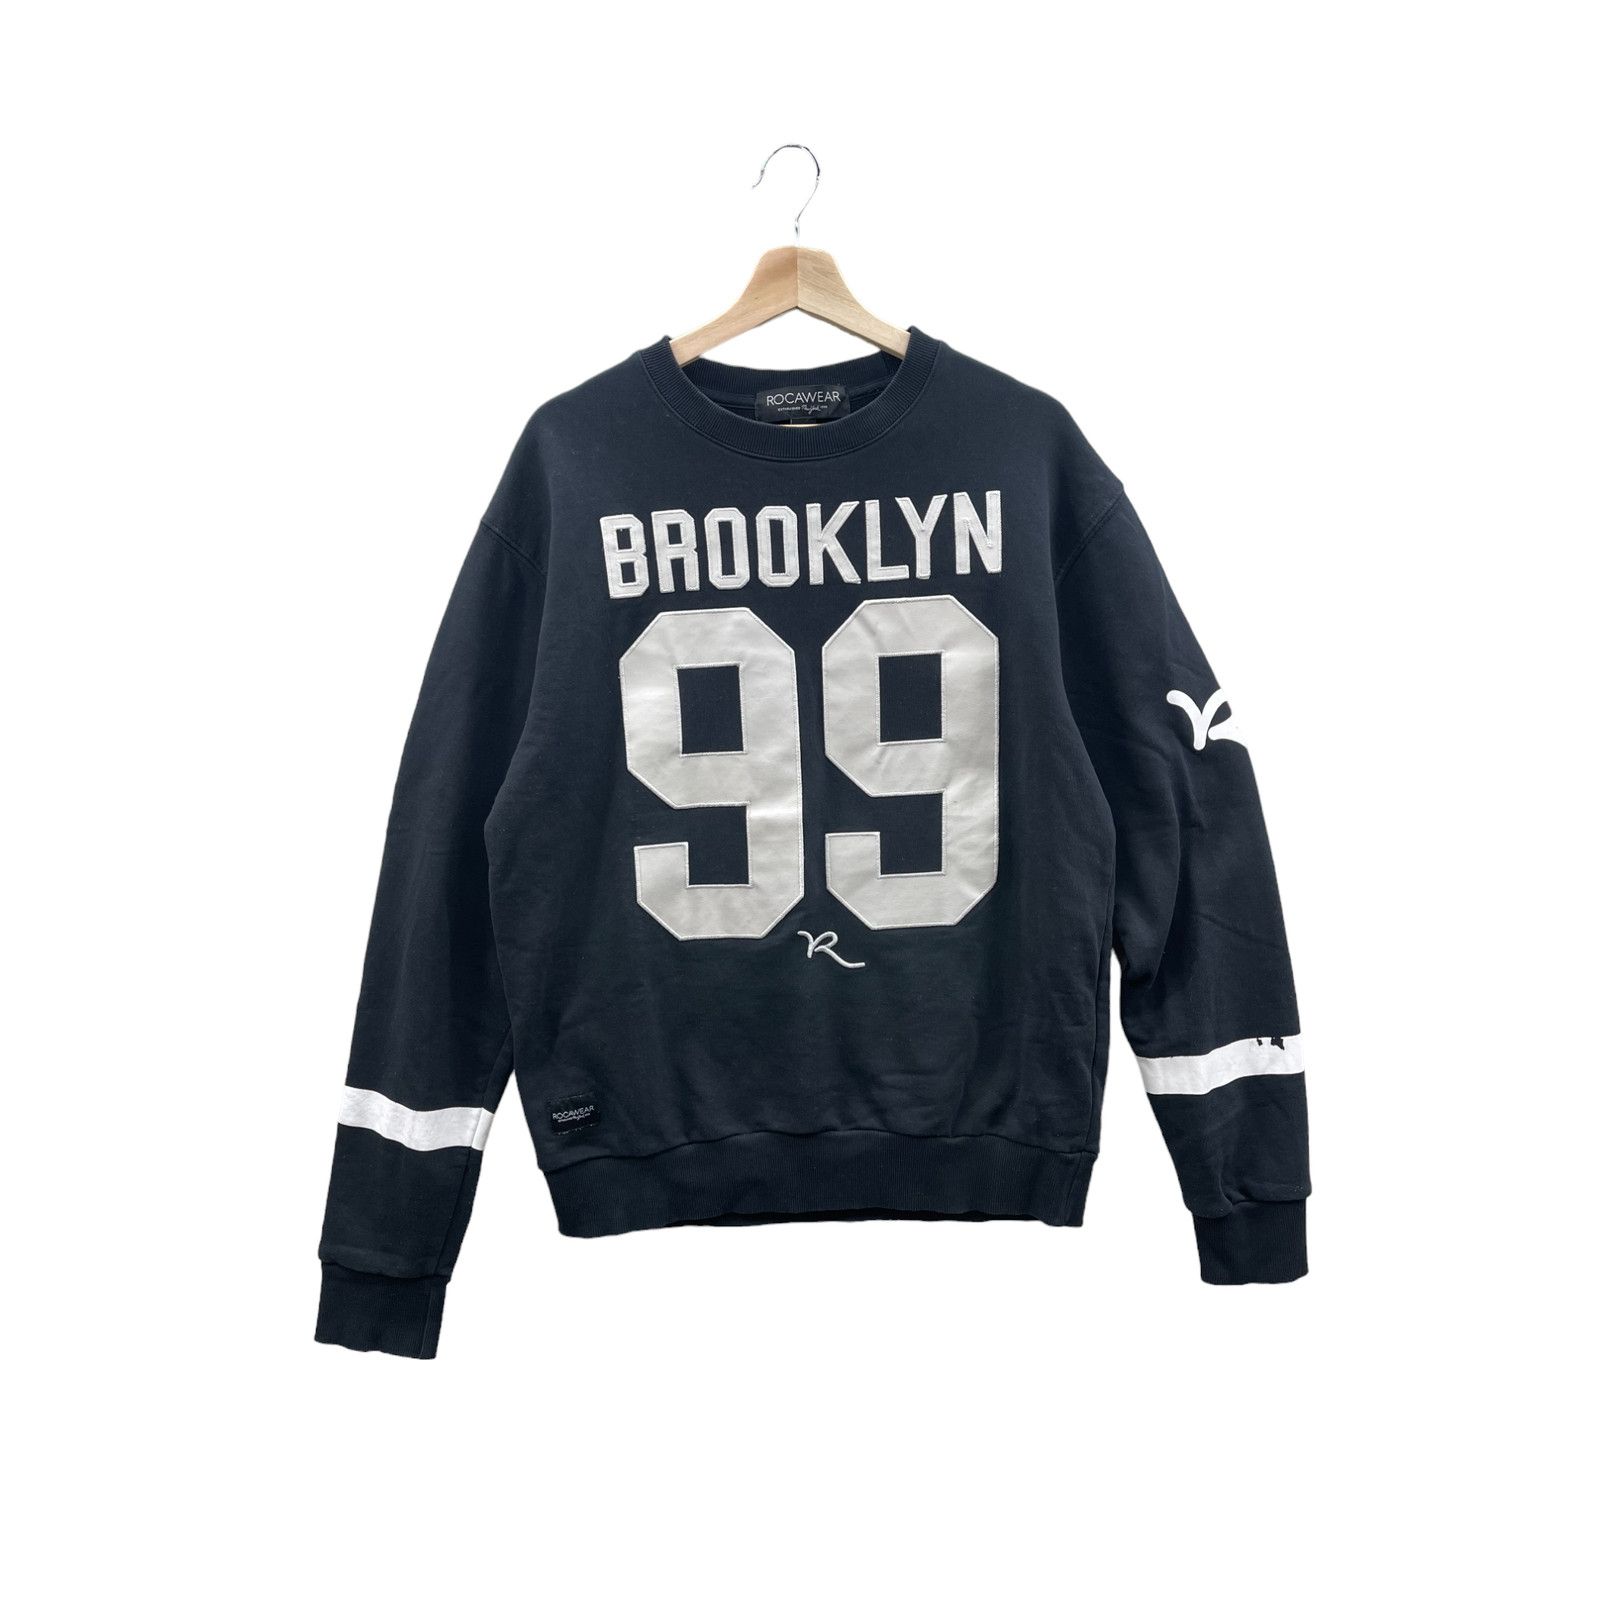 Brooklyn Sweatshirt | Brooklyn New York Vintage Crewneck Sweatshirt